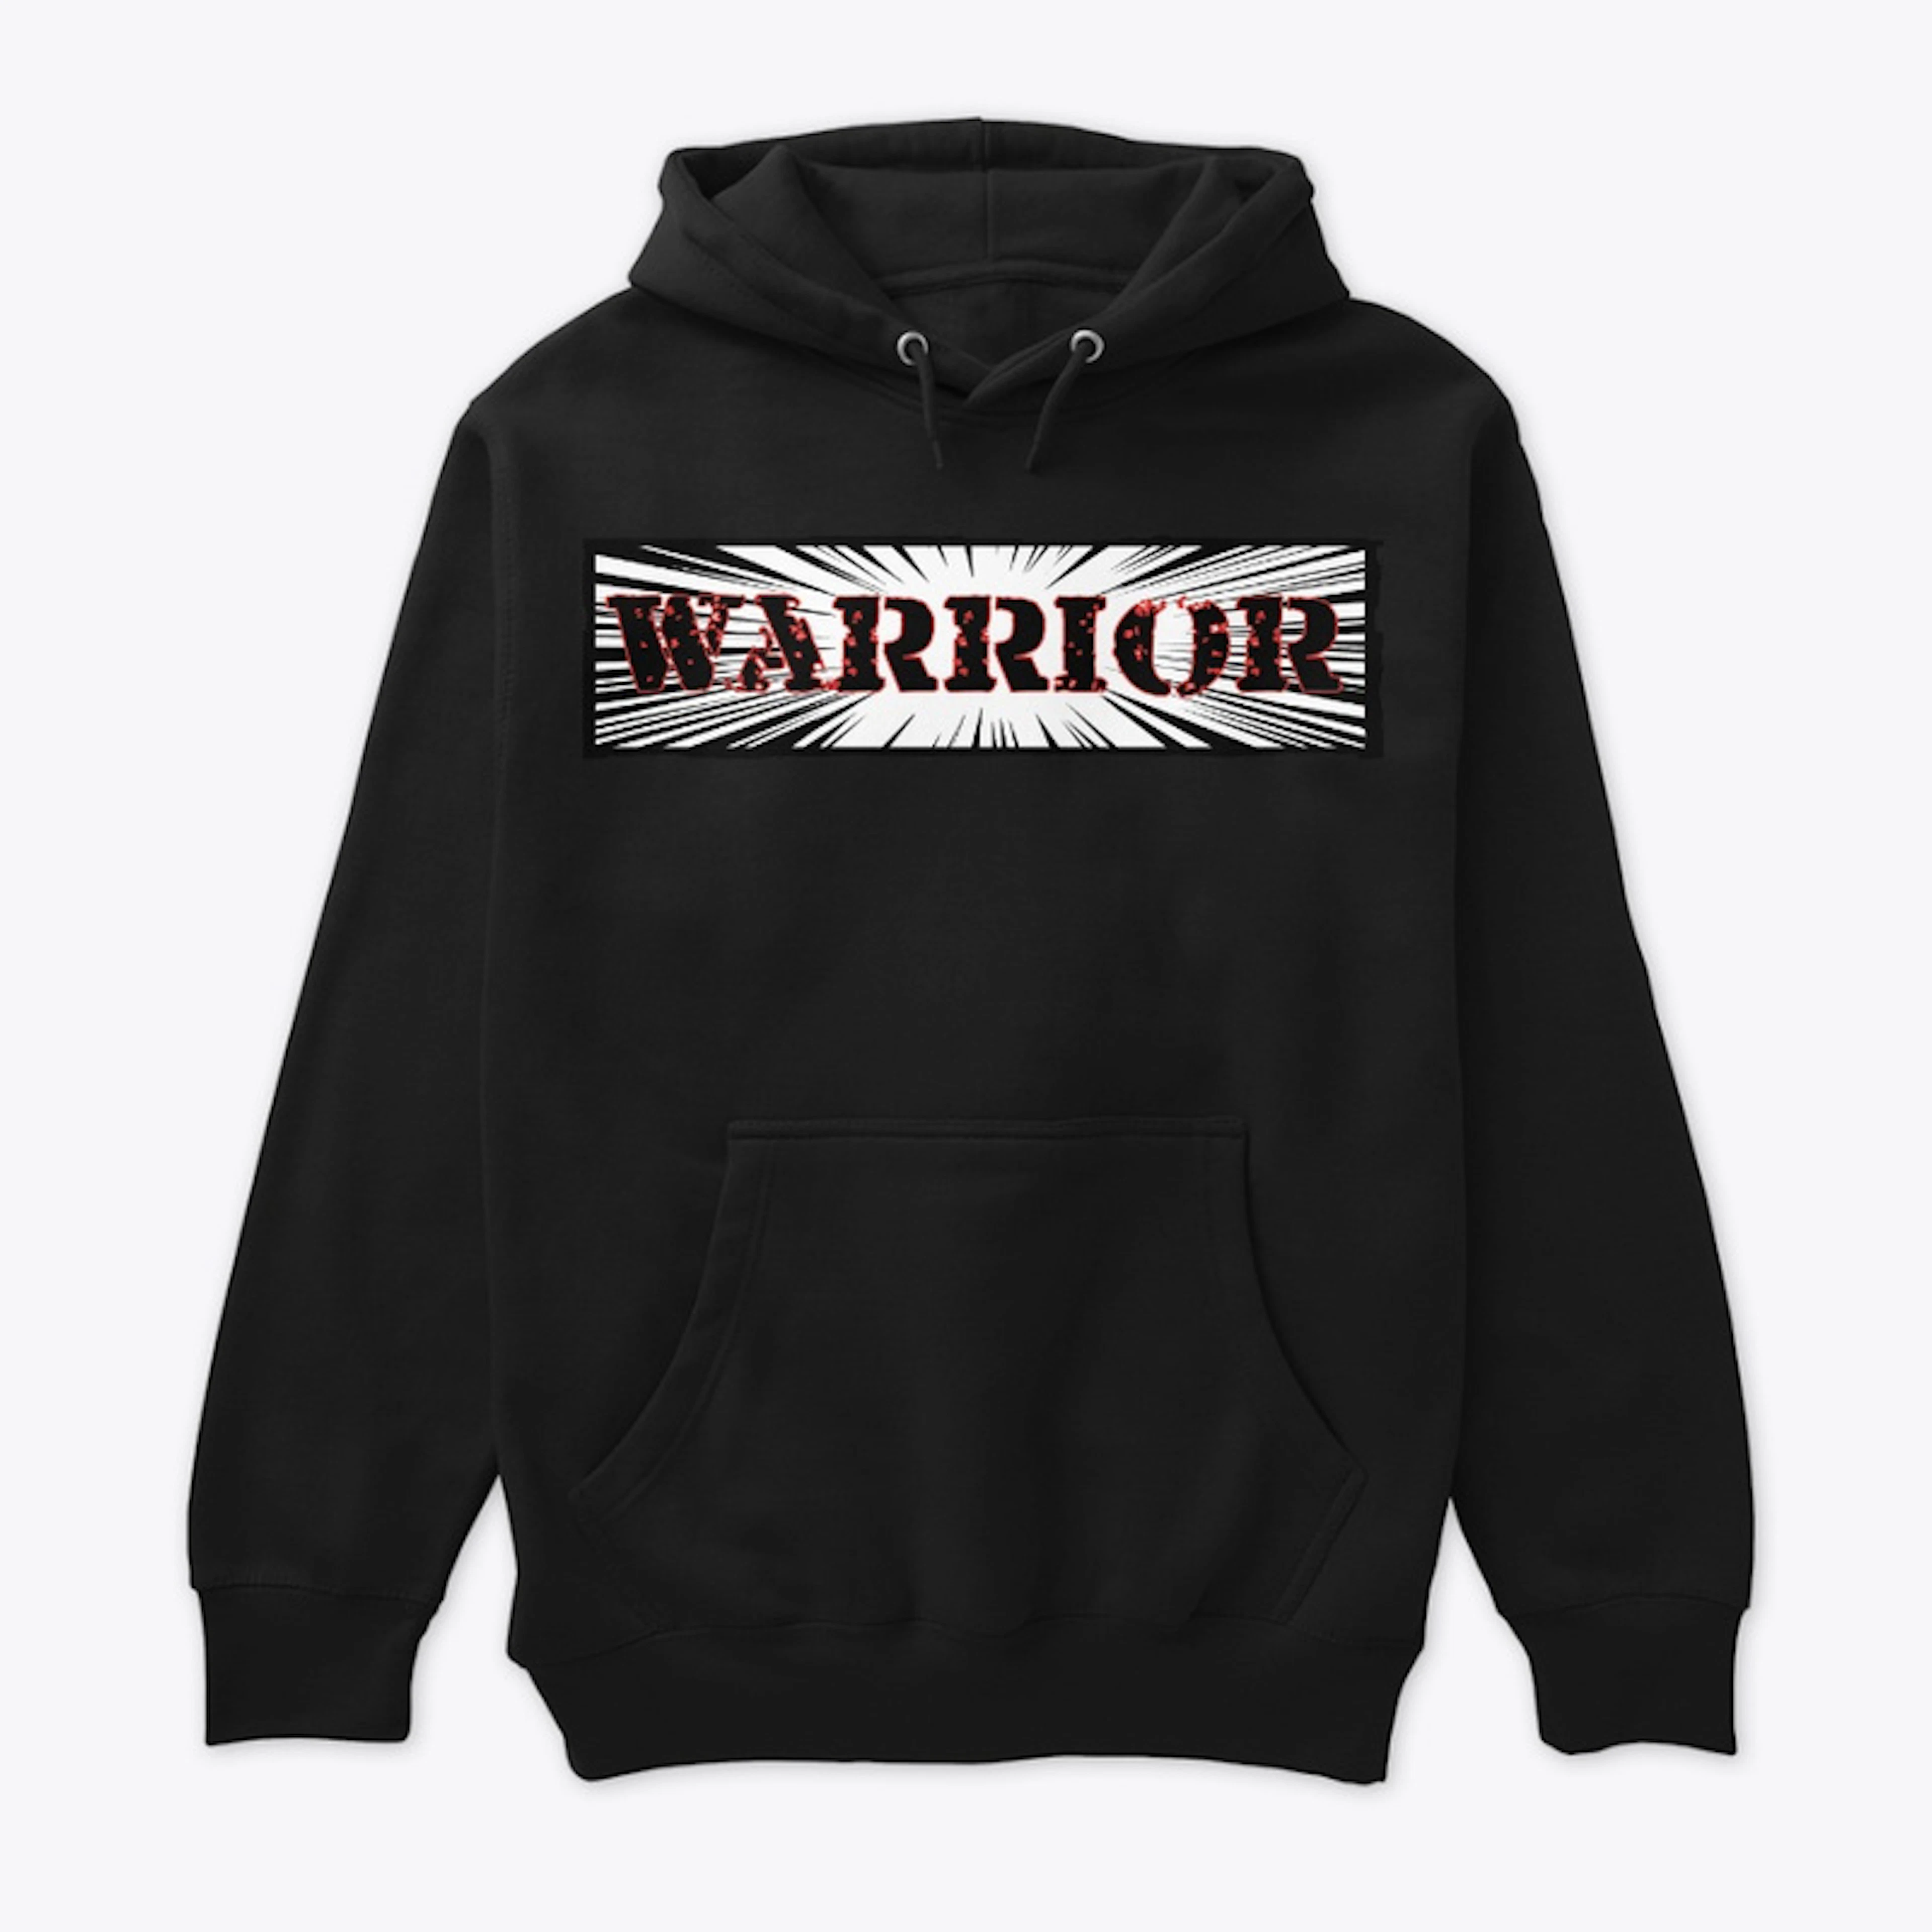 Warrior Design